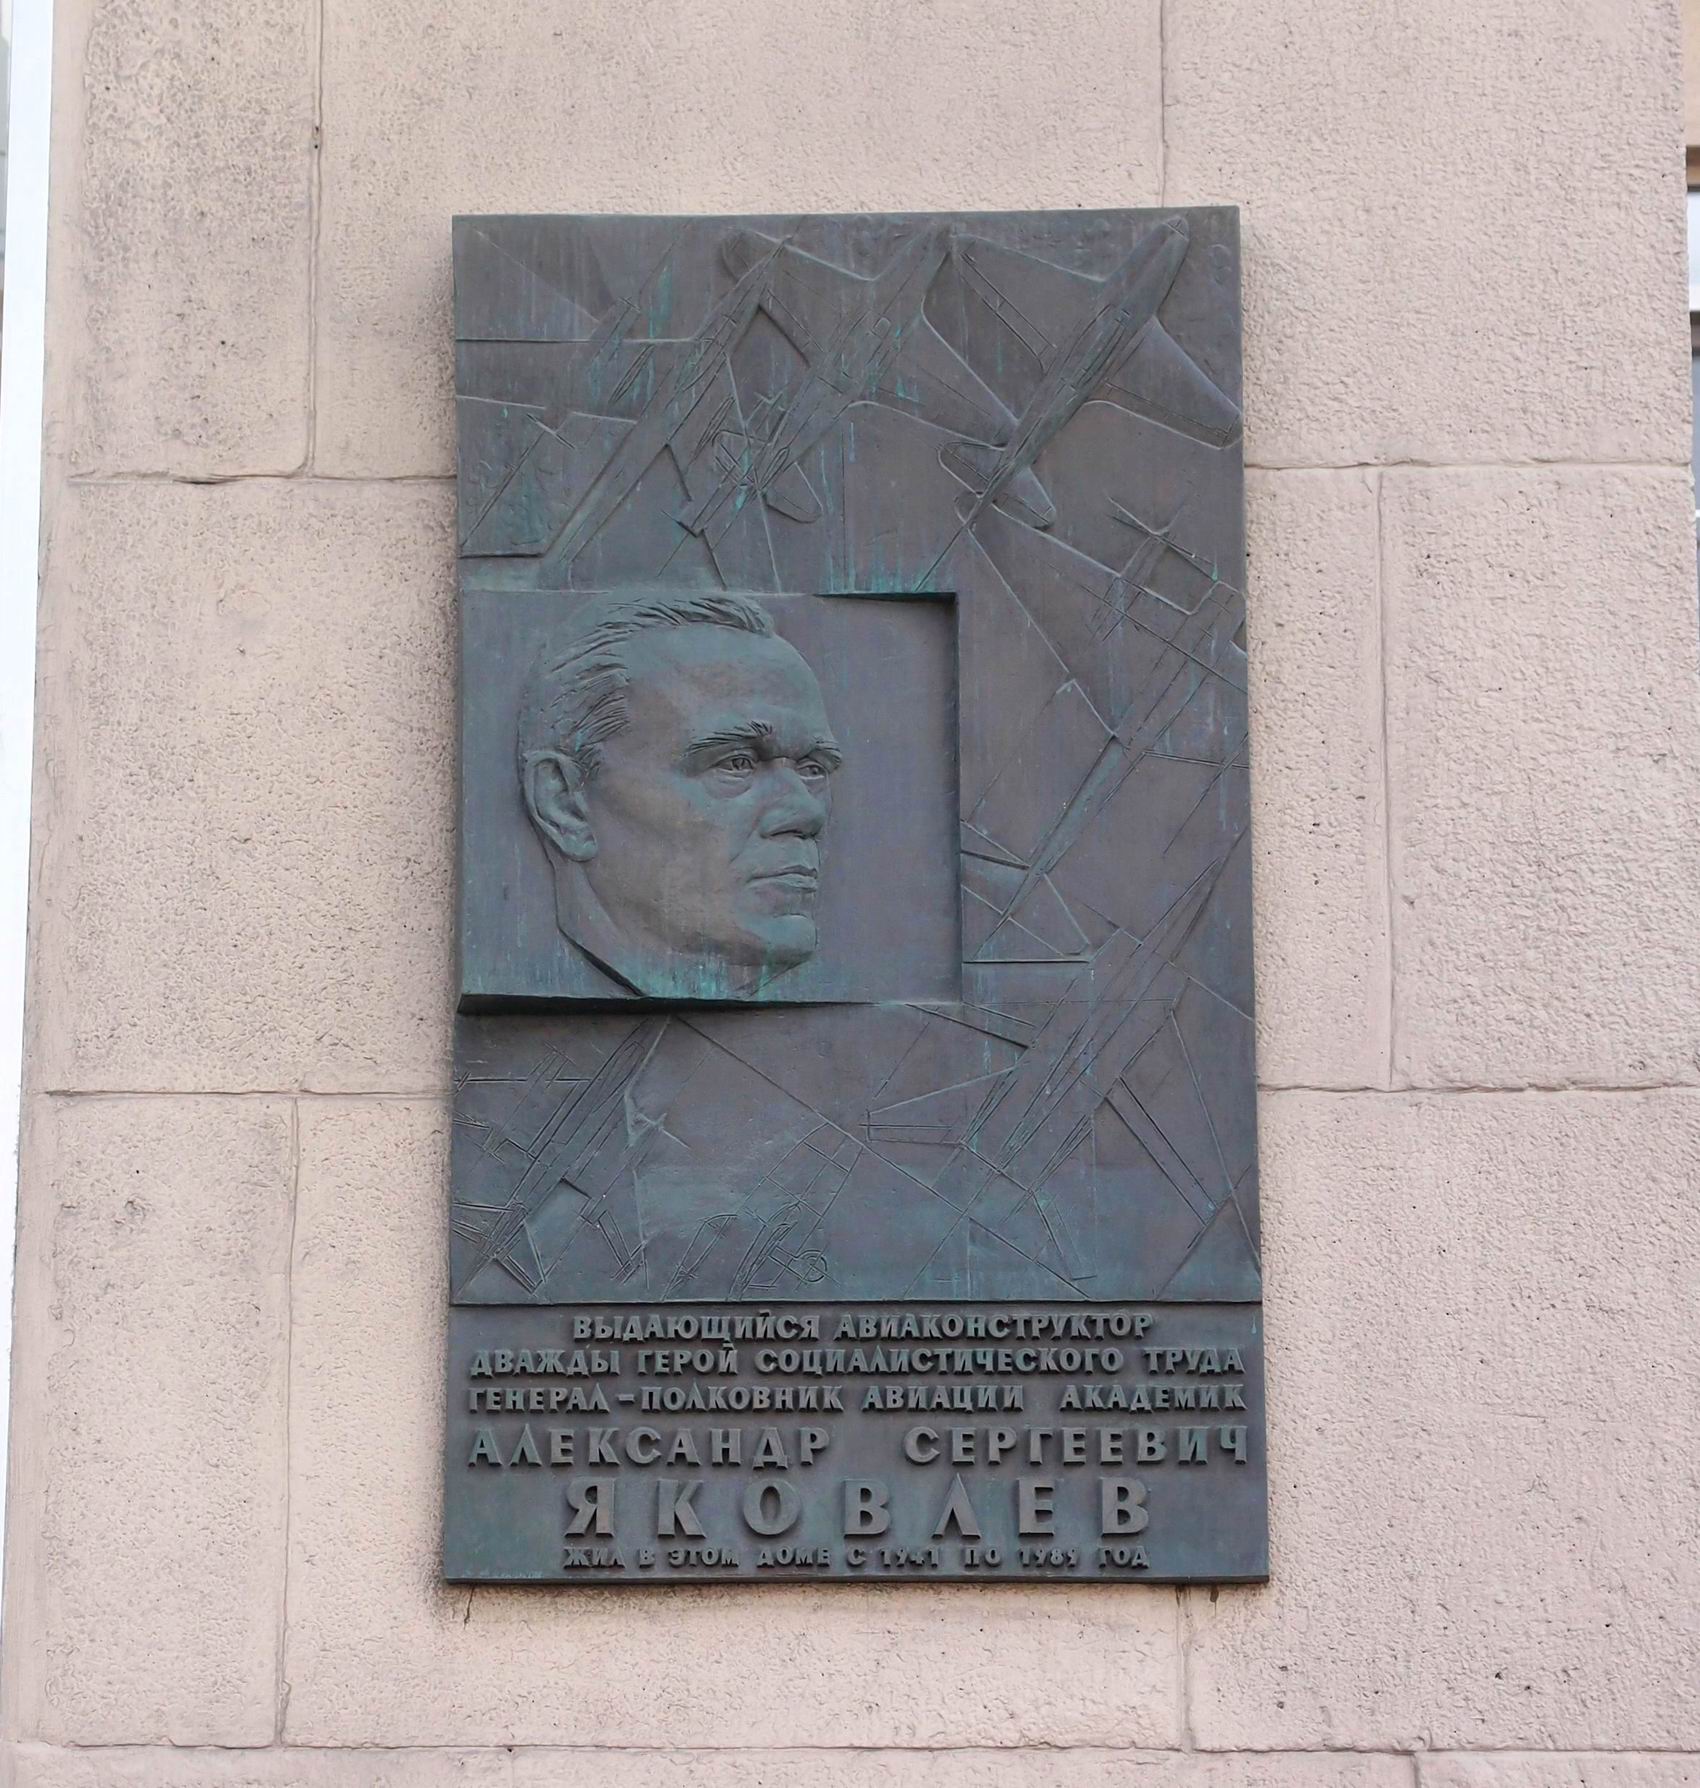 Мемориальная доска Яковлеву А.С. (1906-1989), ск. И.А.Козлов, на Ленинградском проспекте, дом 69-71, открыта в 2006.